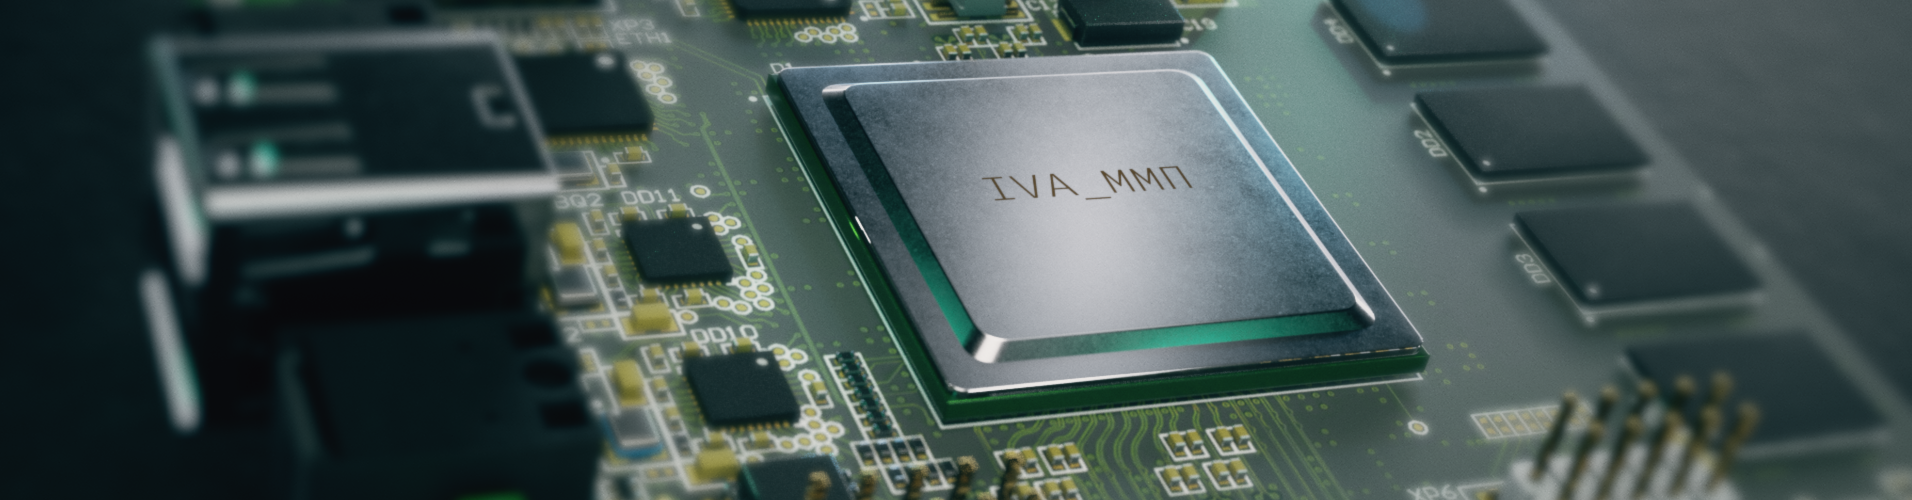 Микропроцессор IVA